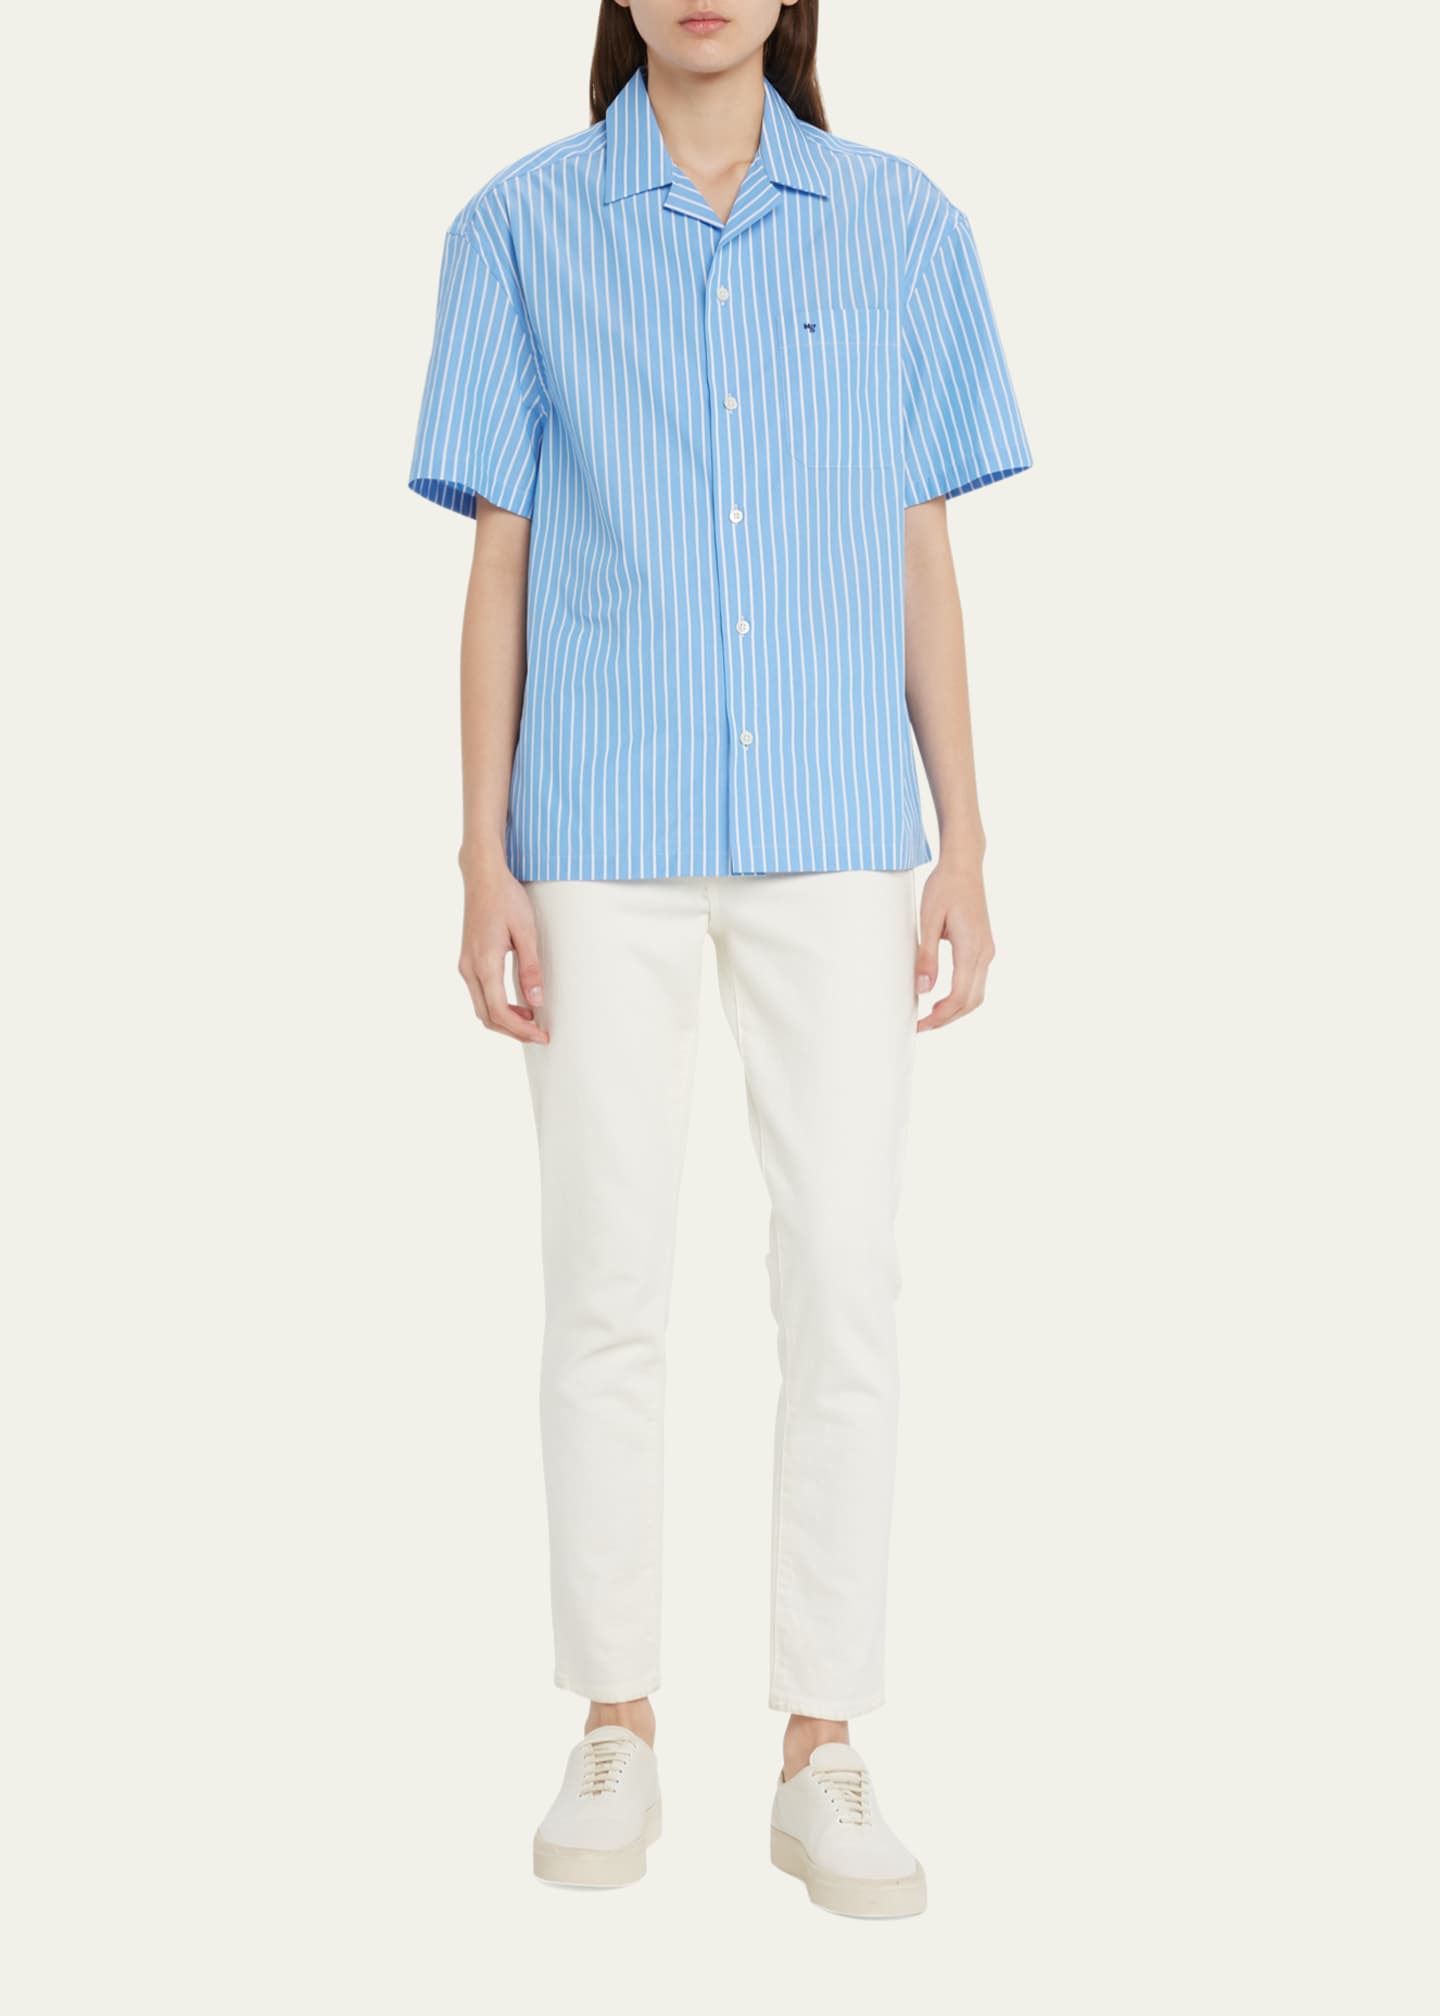 HOMMEGIRLS Stripe Short-Sleeve Cotton Shirt - Bergdorf Goodman